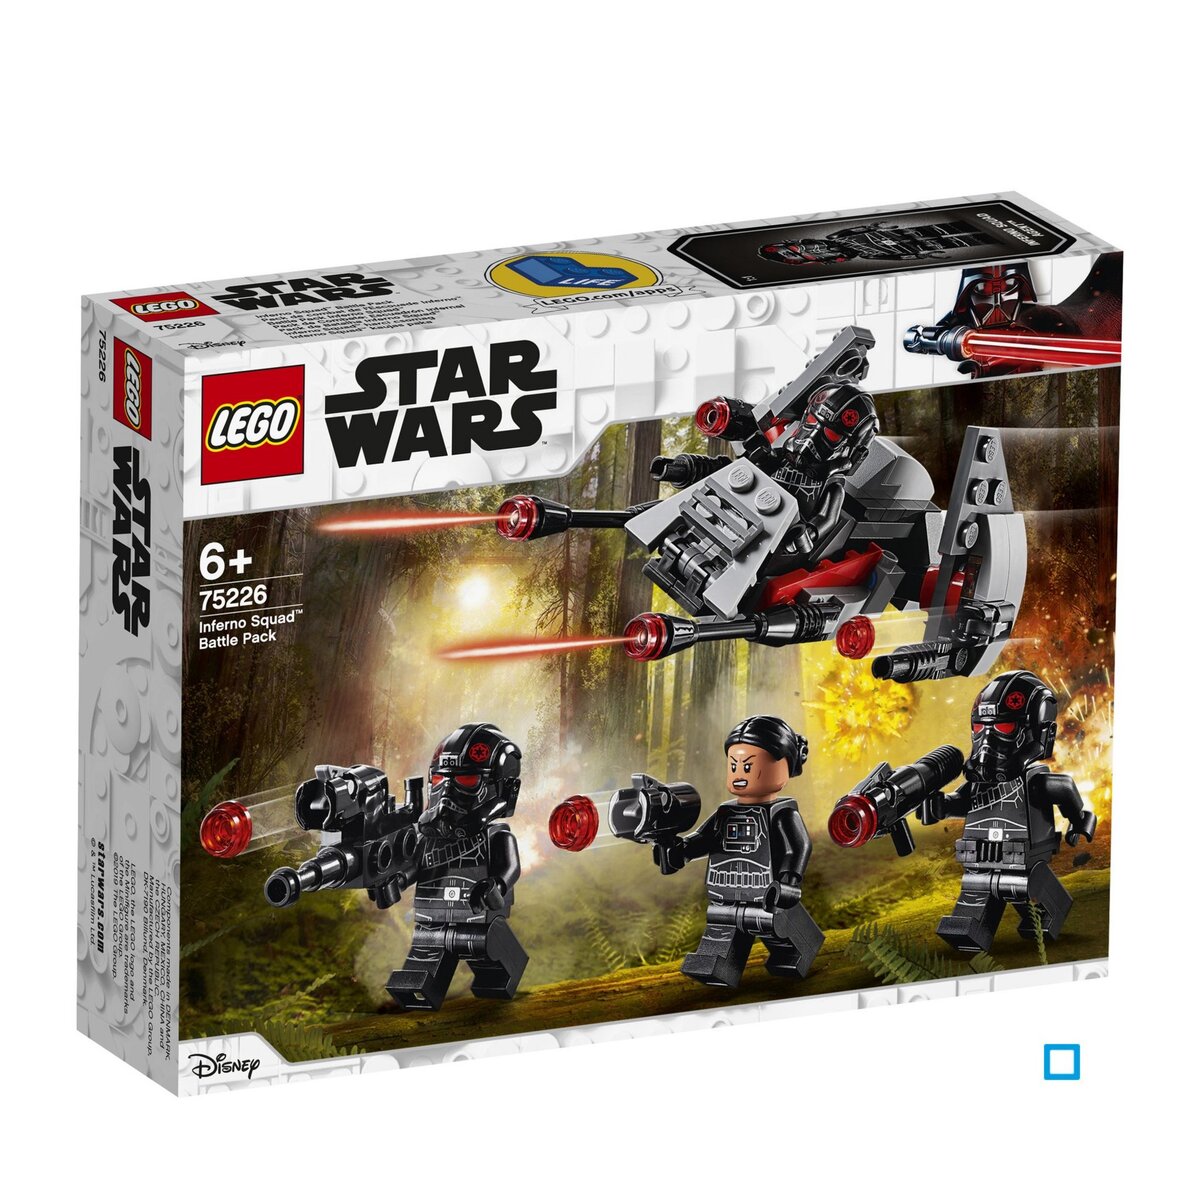 LEGO Star Wars 75226 - Pack de combat de l'Escouade Inferno